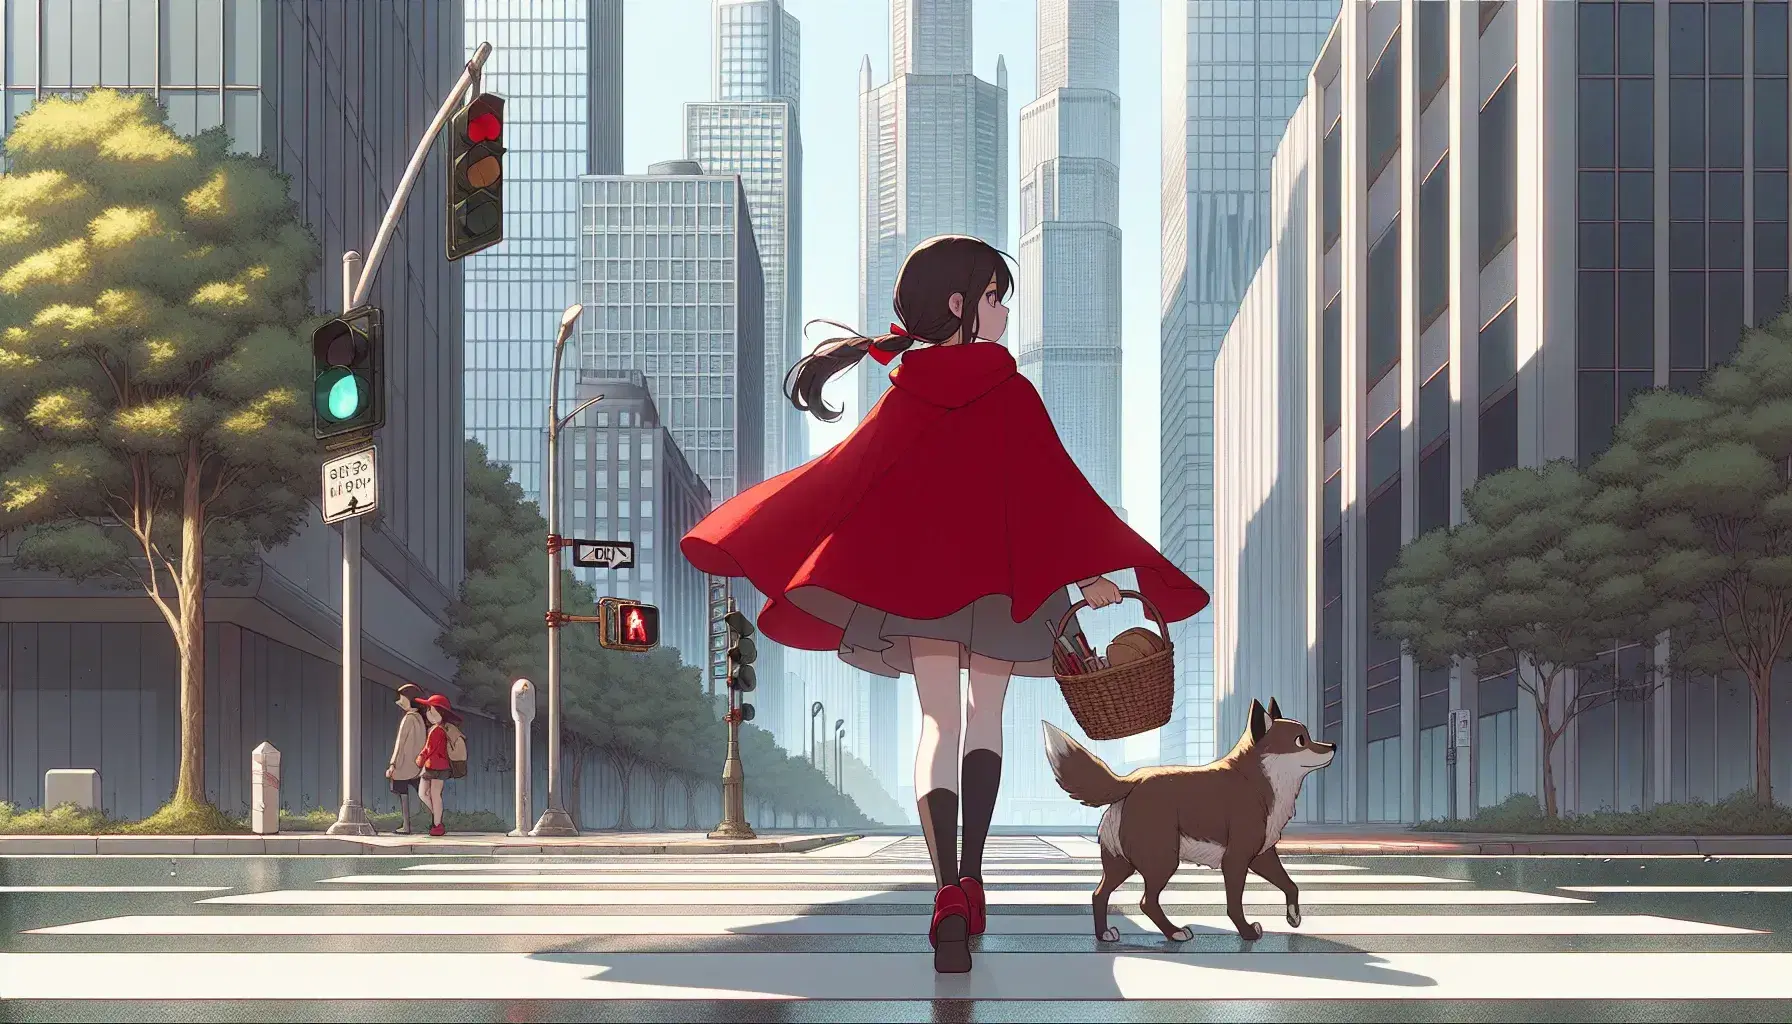 Niña con capa roja y cesta camina por calle urbana con perro, rascacielos de fondo y semáforo en verde.